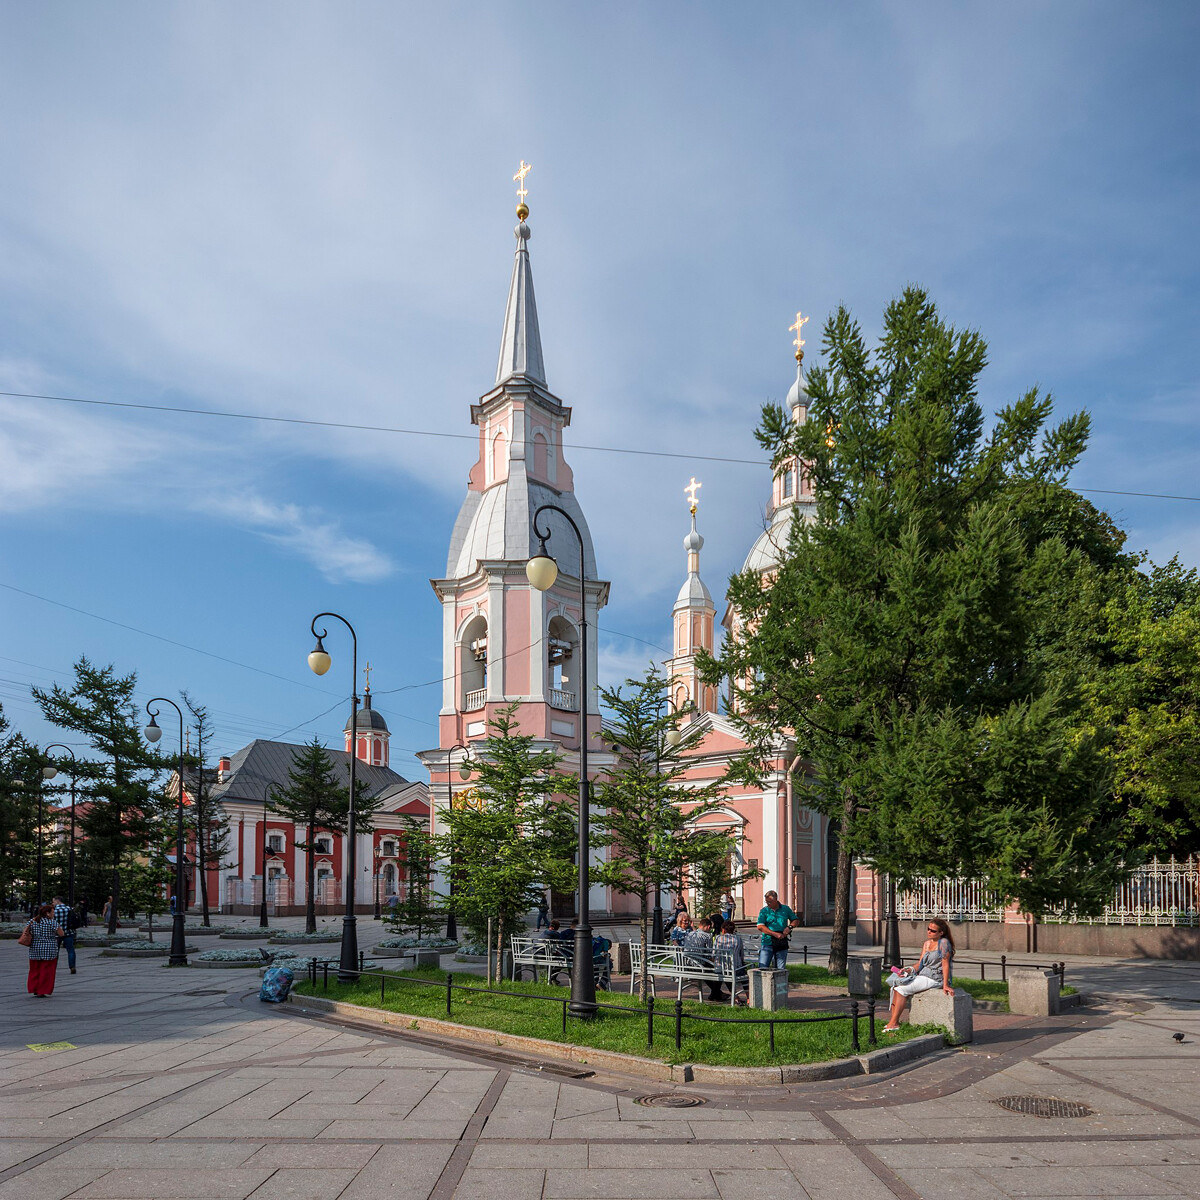  Андреевский собор, монумент на архитектурата от XVIII век 